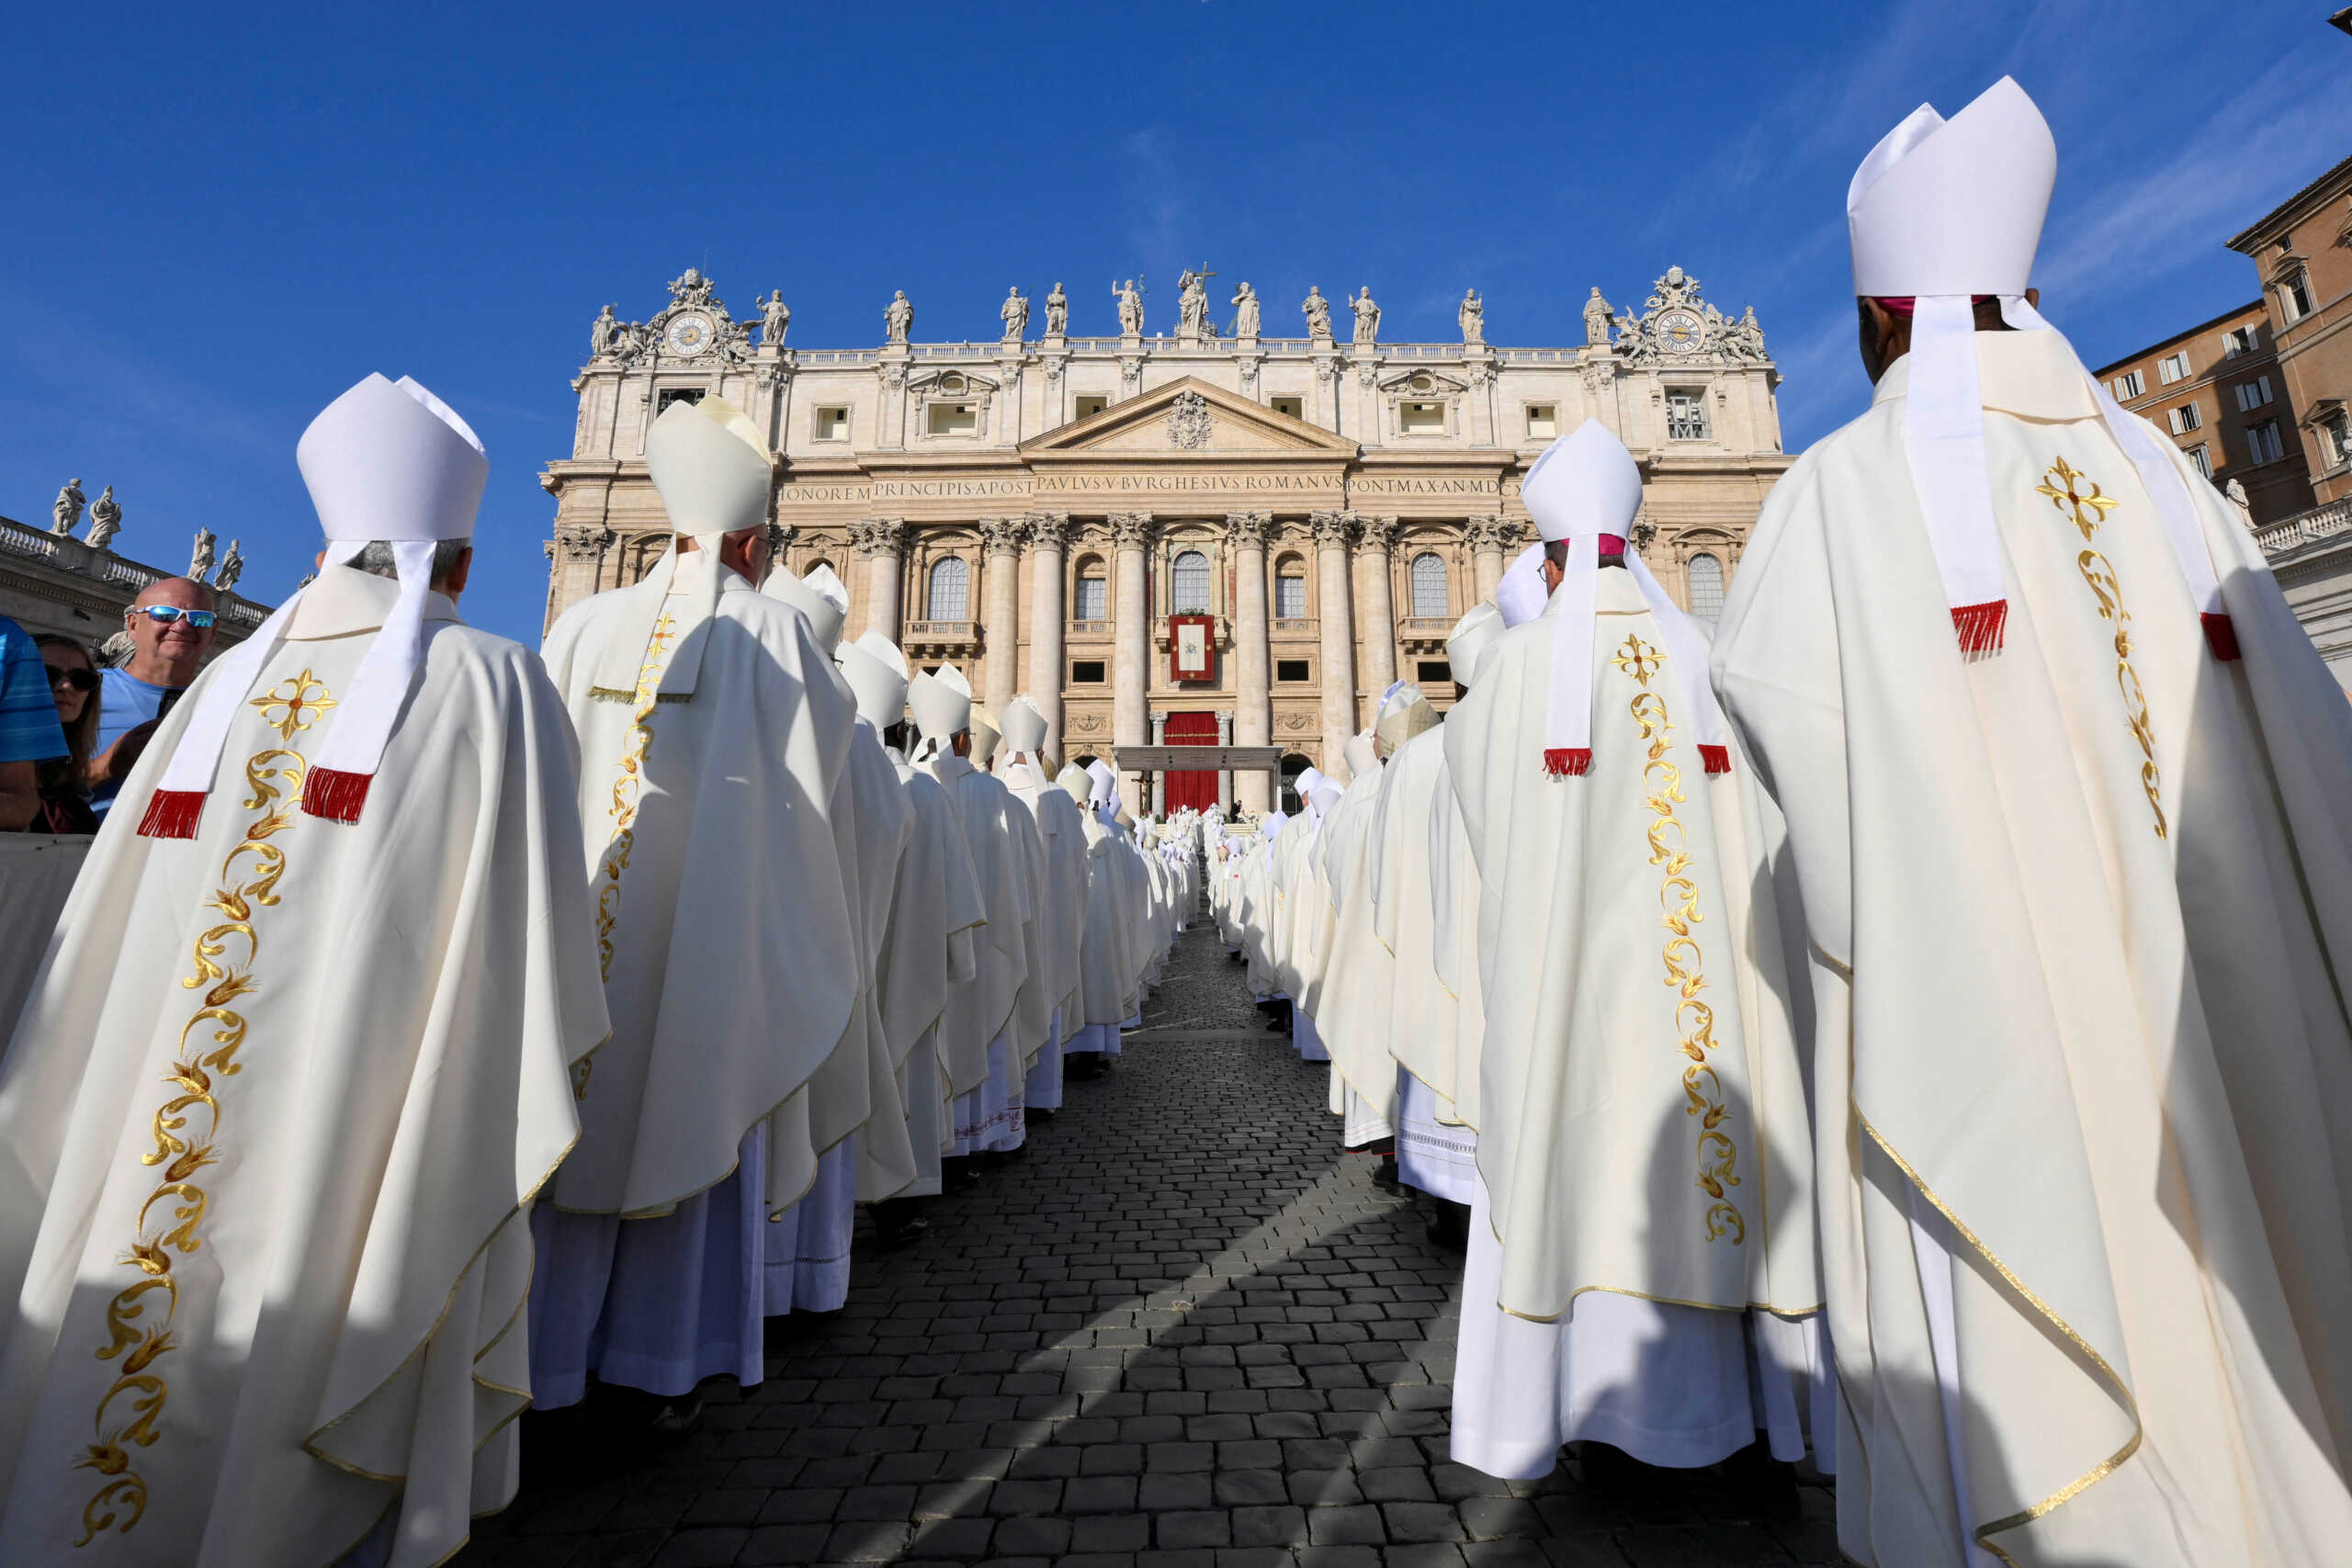 Βατικανό: Παραιτήθηκε Πολωνός επίσκοπος αφού ένας ιερέας οργάνωσε όργιο στην ενορία του